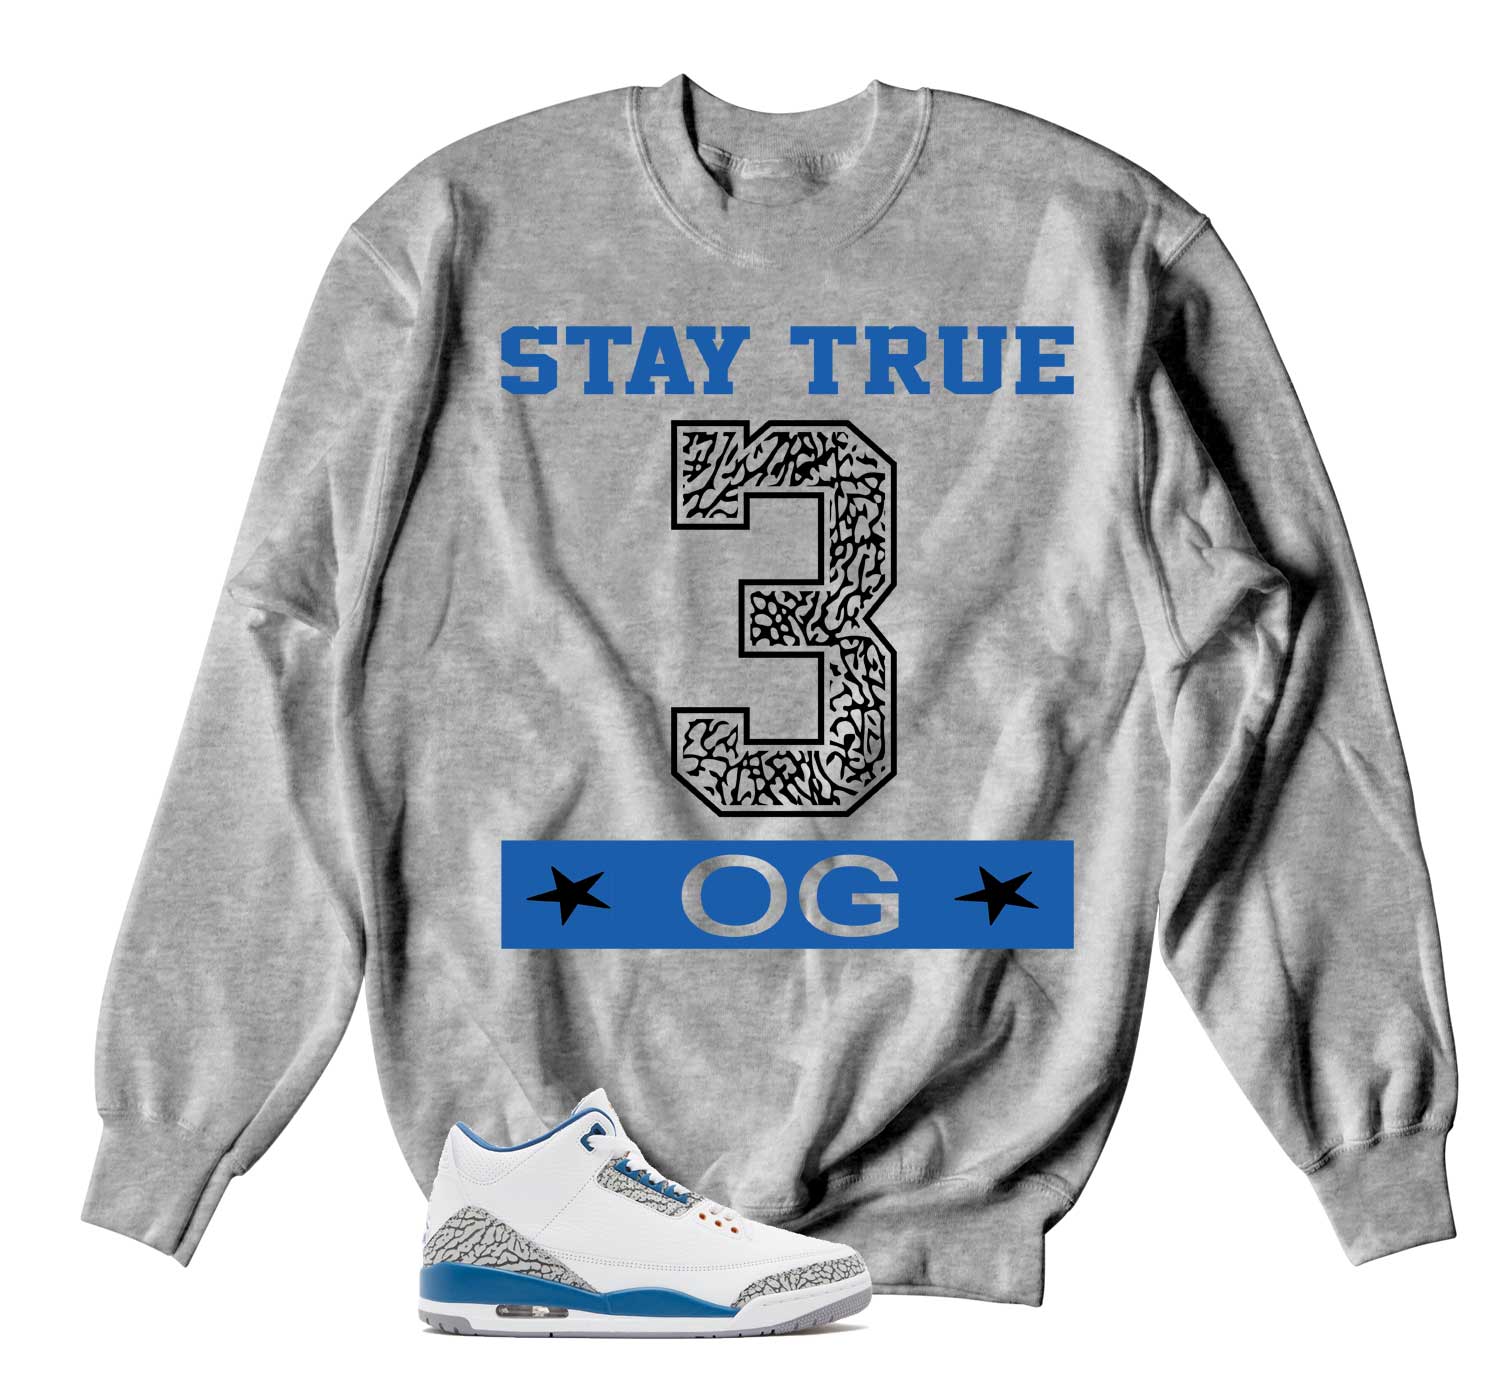 Retro 3 Wizards Sweater - Stay True - Heather Grey